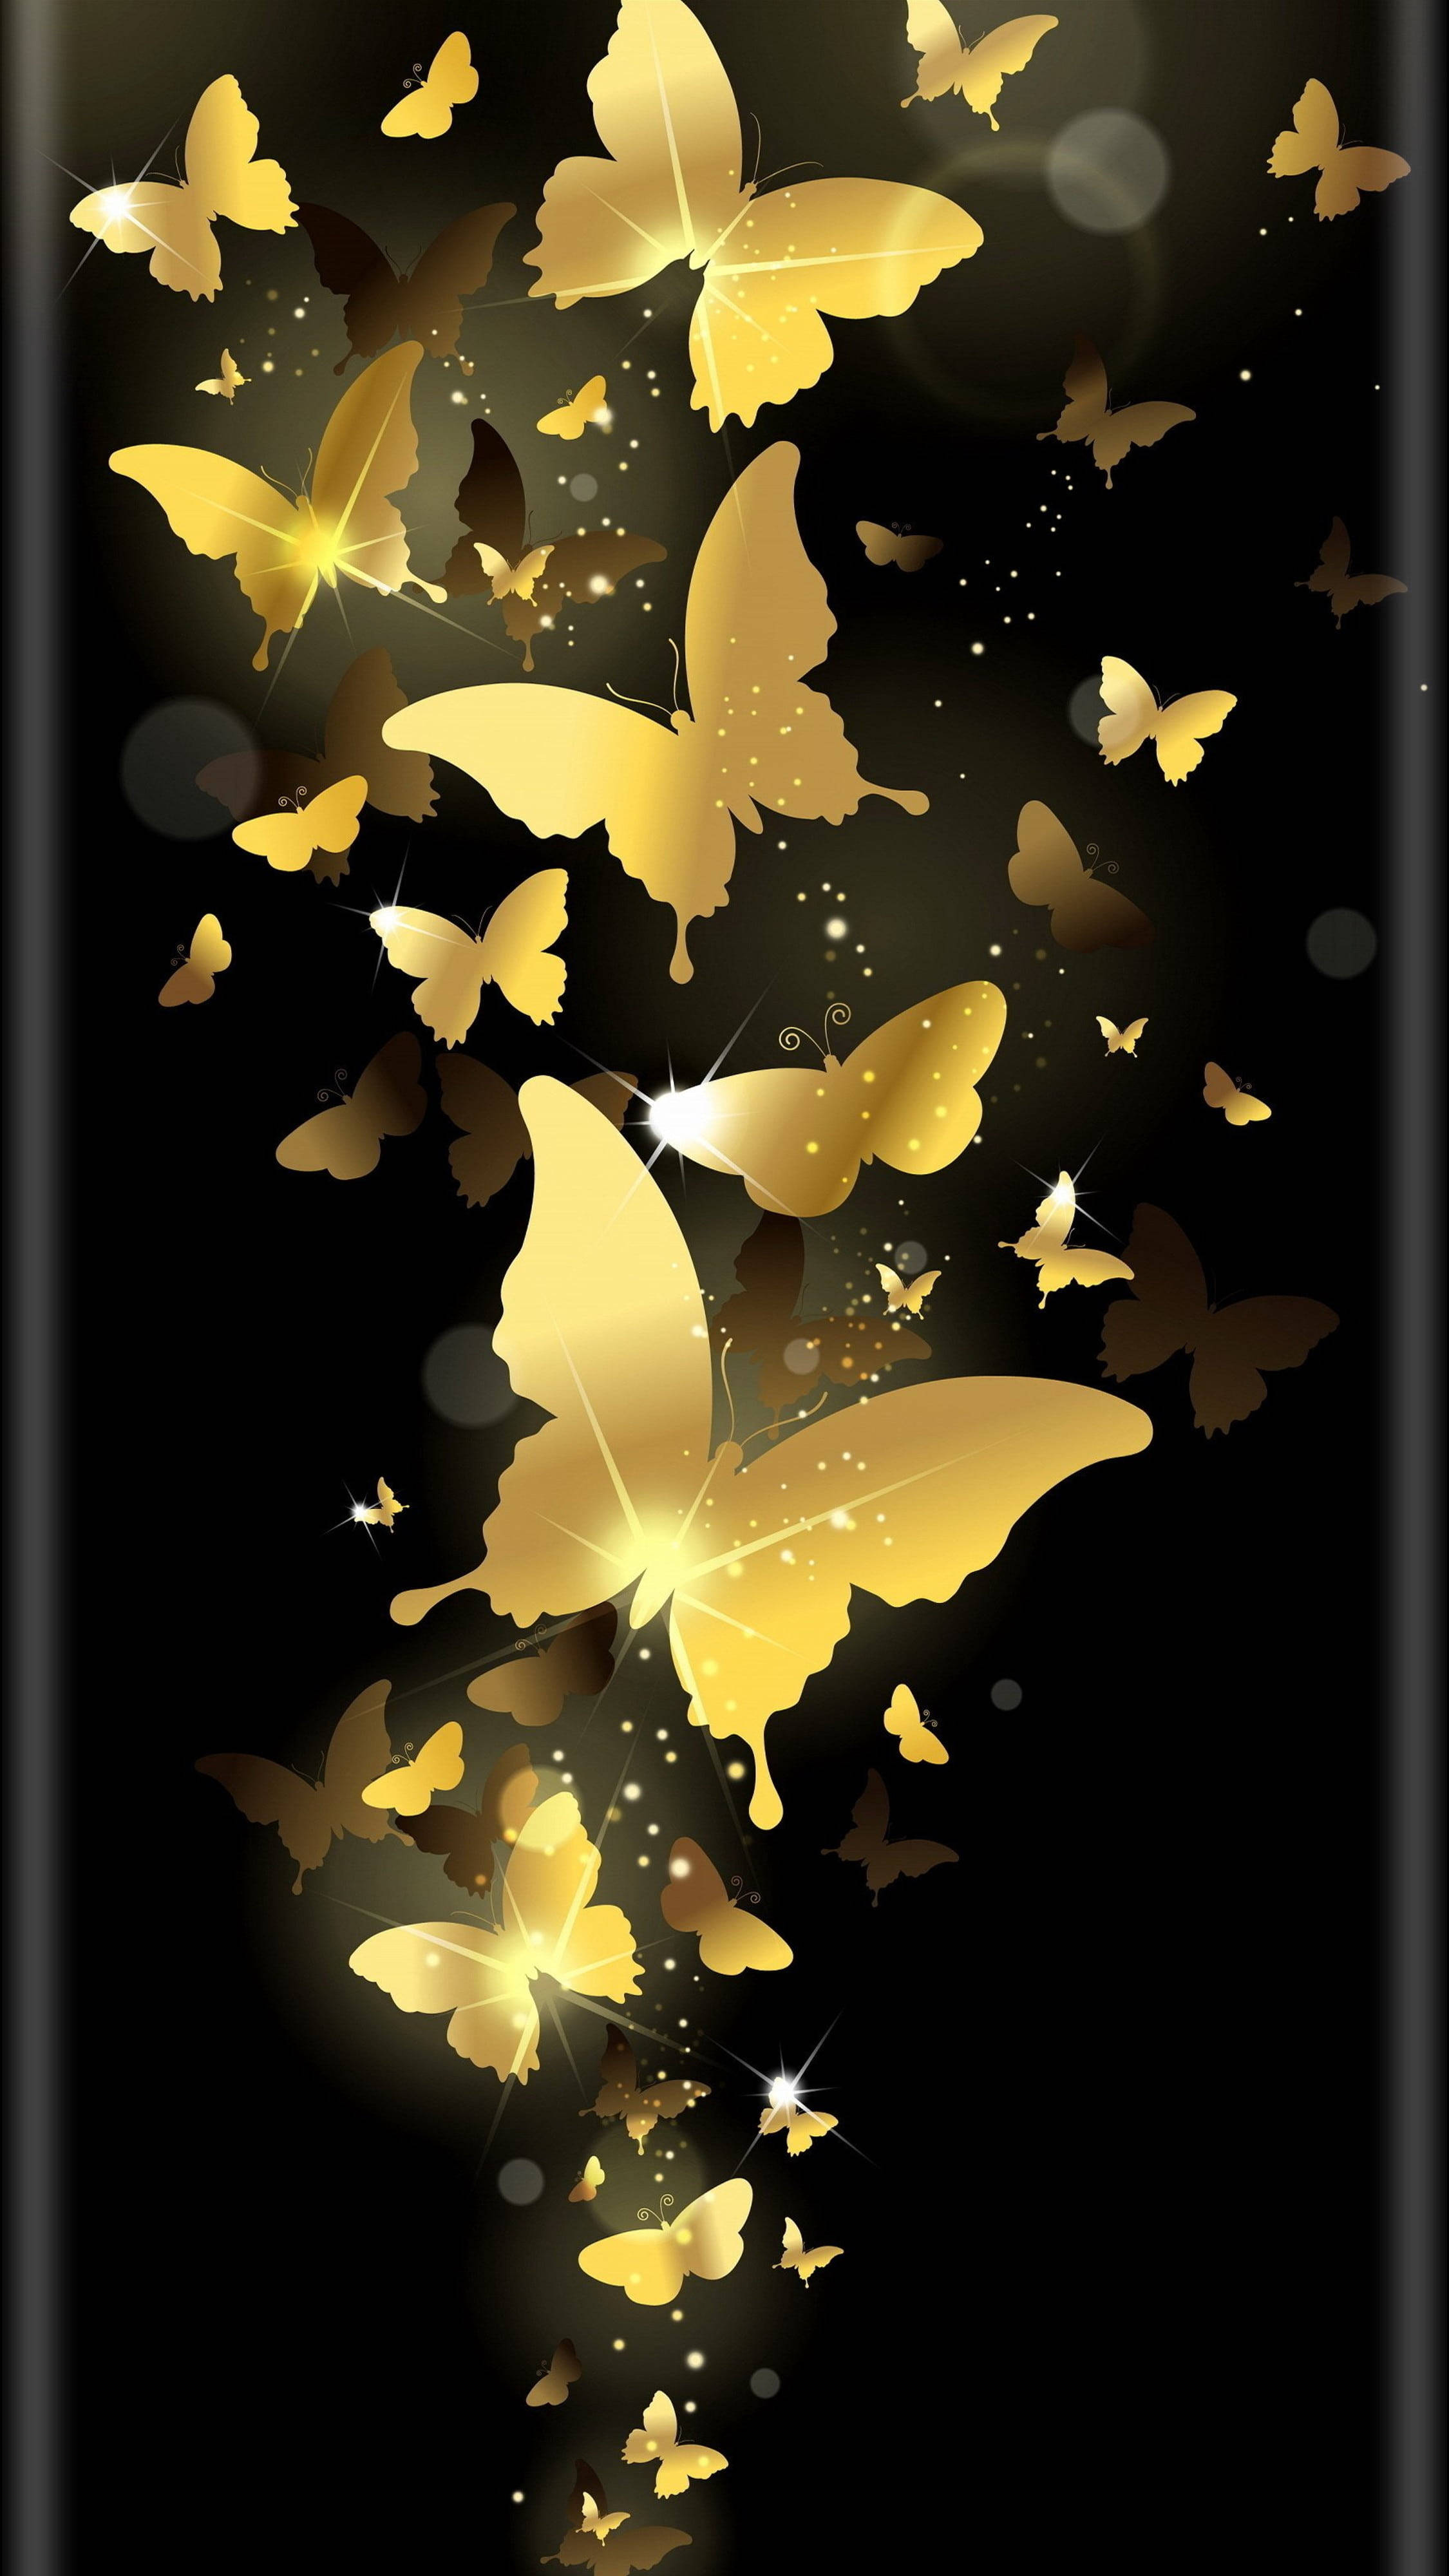 Красивые картинки на заставку экрана телефона. Красивый фон на телефон. Фотообои телефон. Заставка бабочки. Стильные обои на телефон.